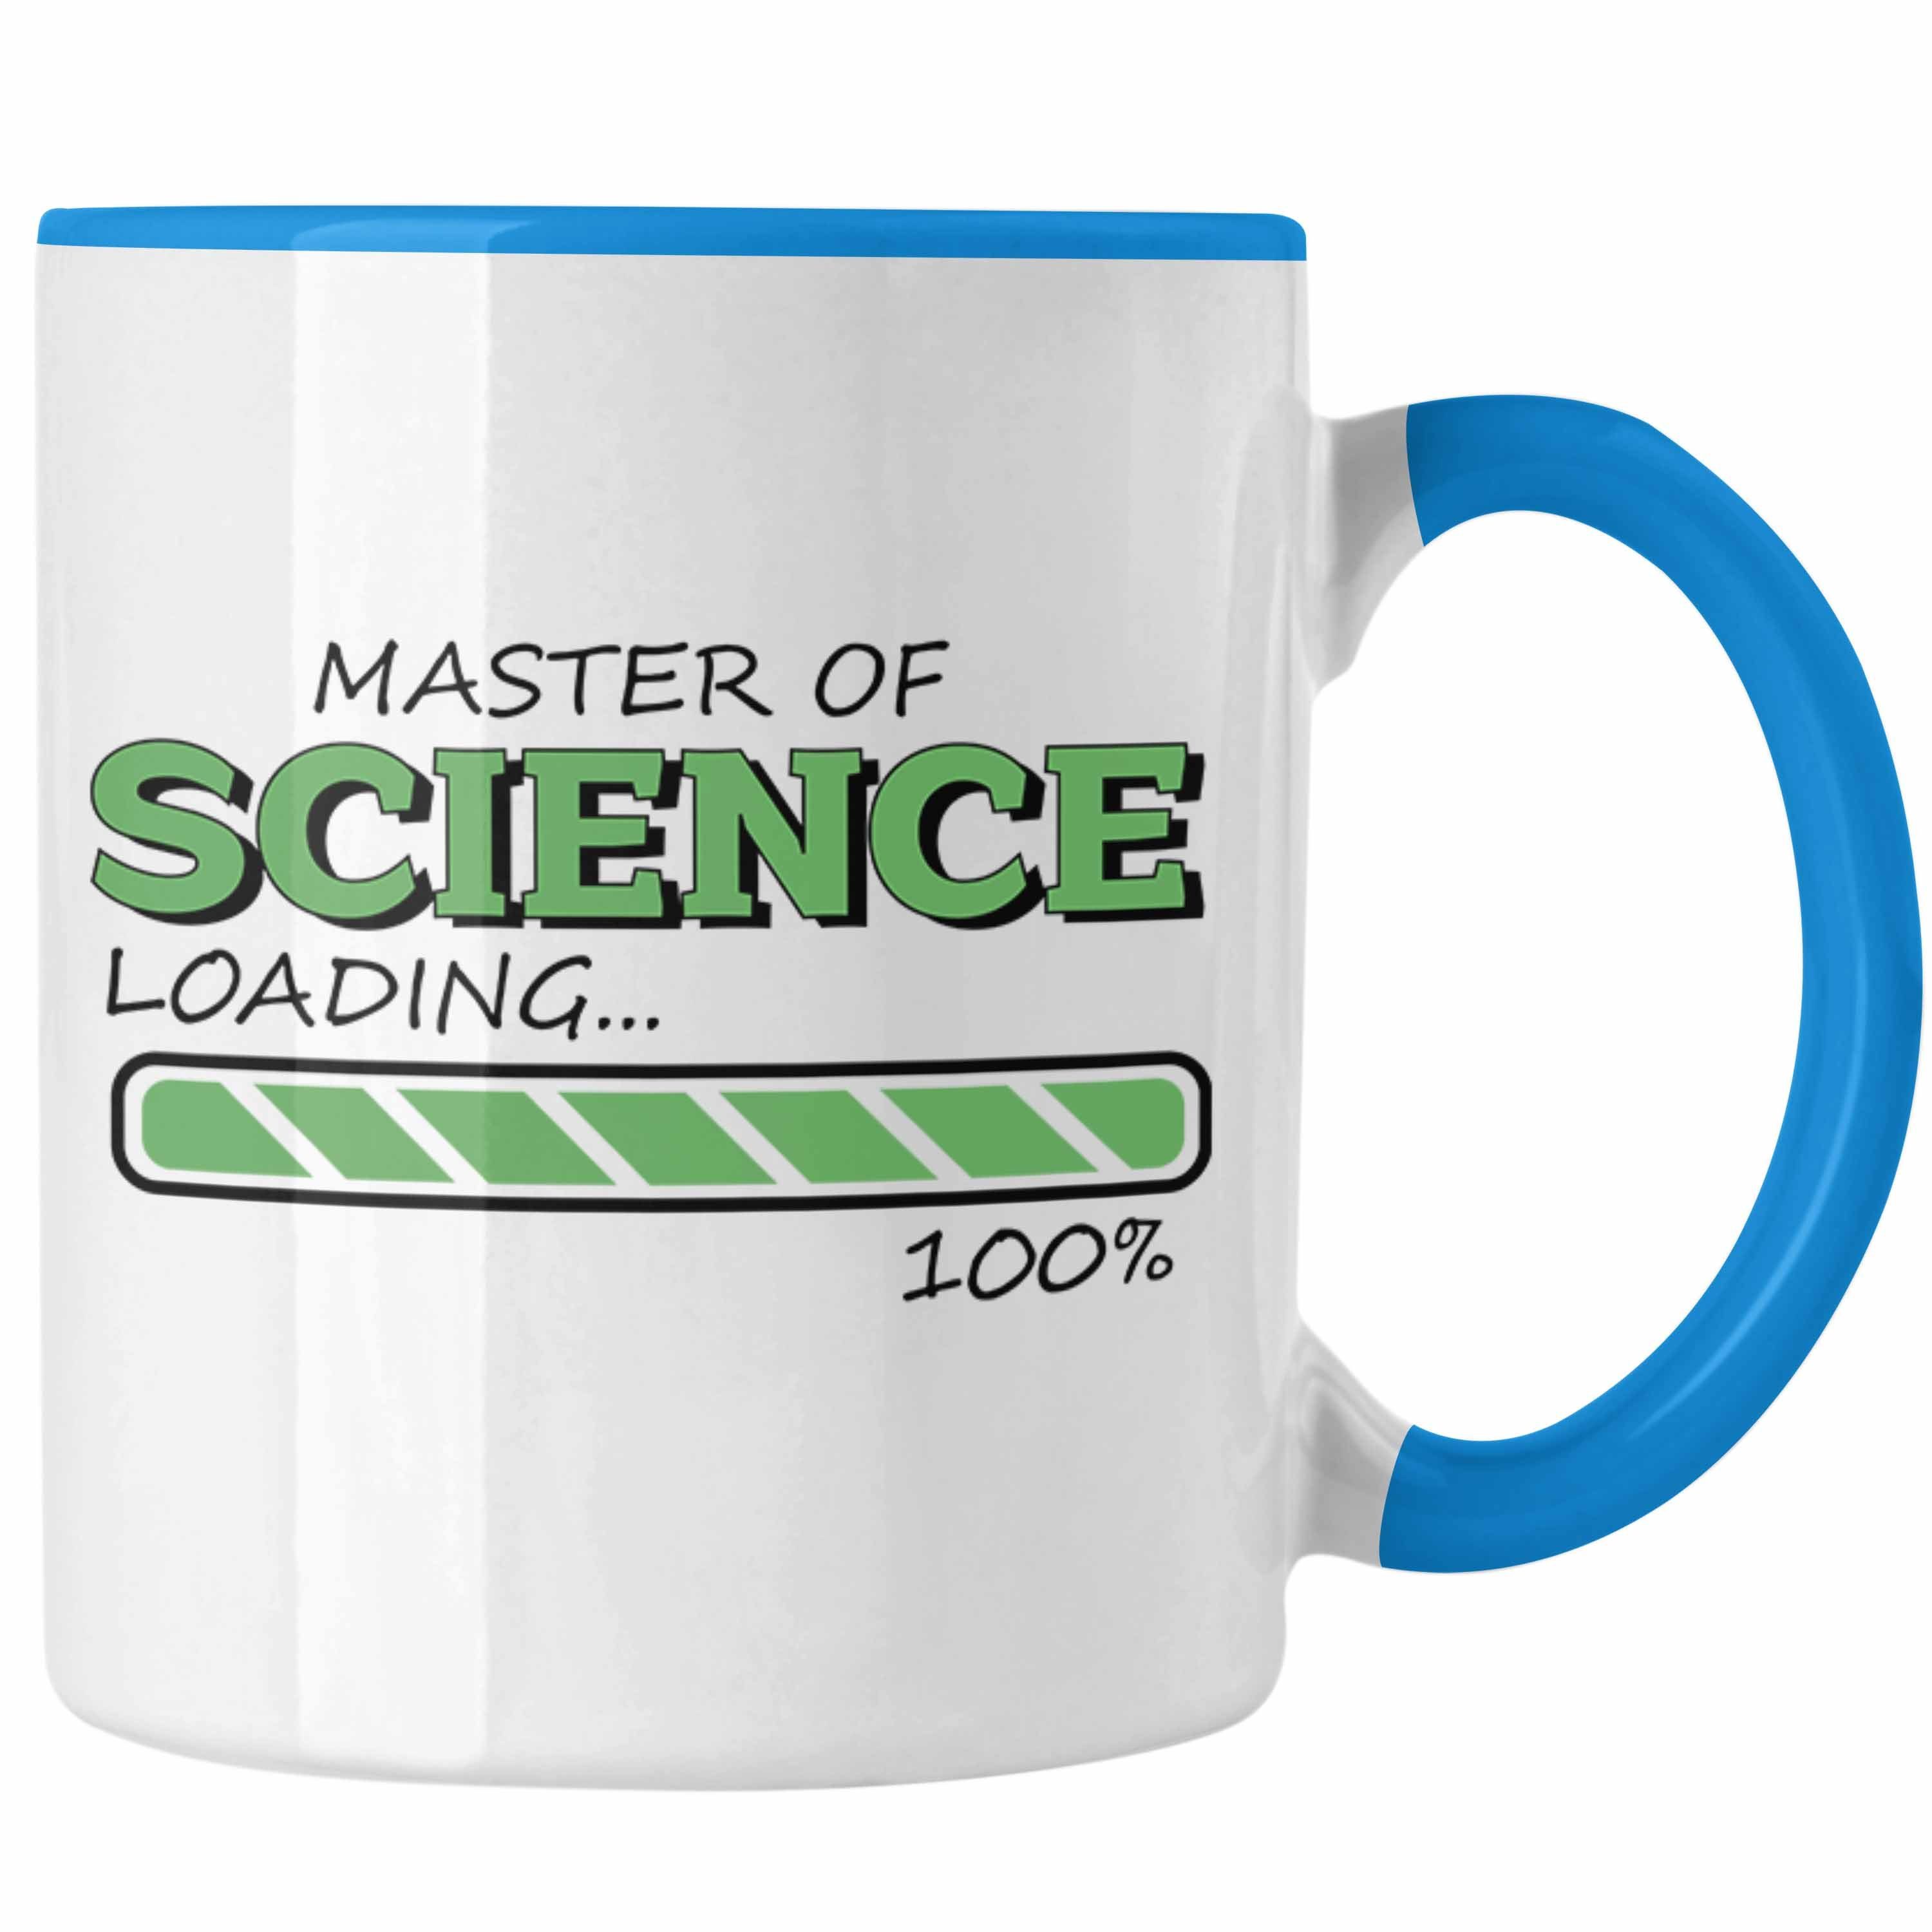 Trendation Tasse Lustige Tasse "Master Science Absolvent Of Geschenkidee Blau für Loading" 